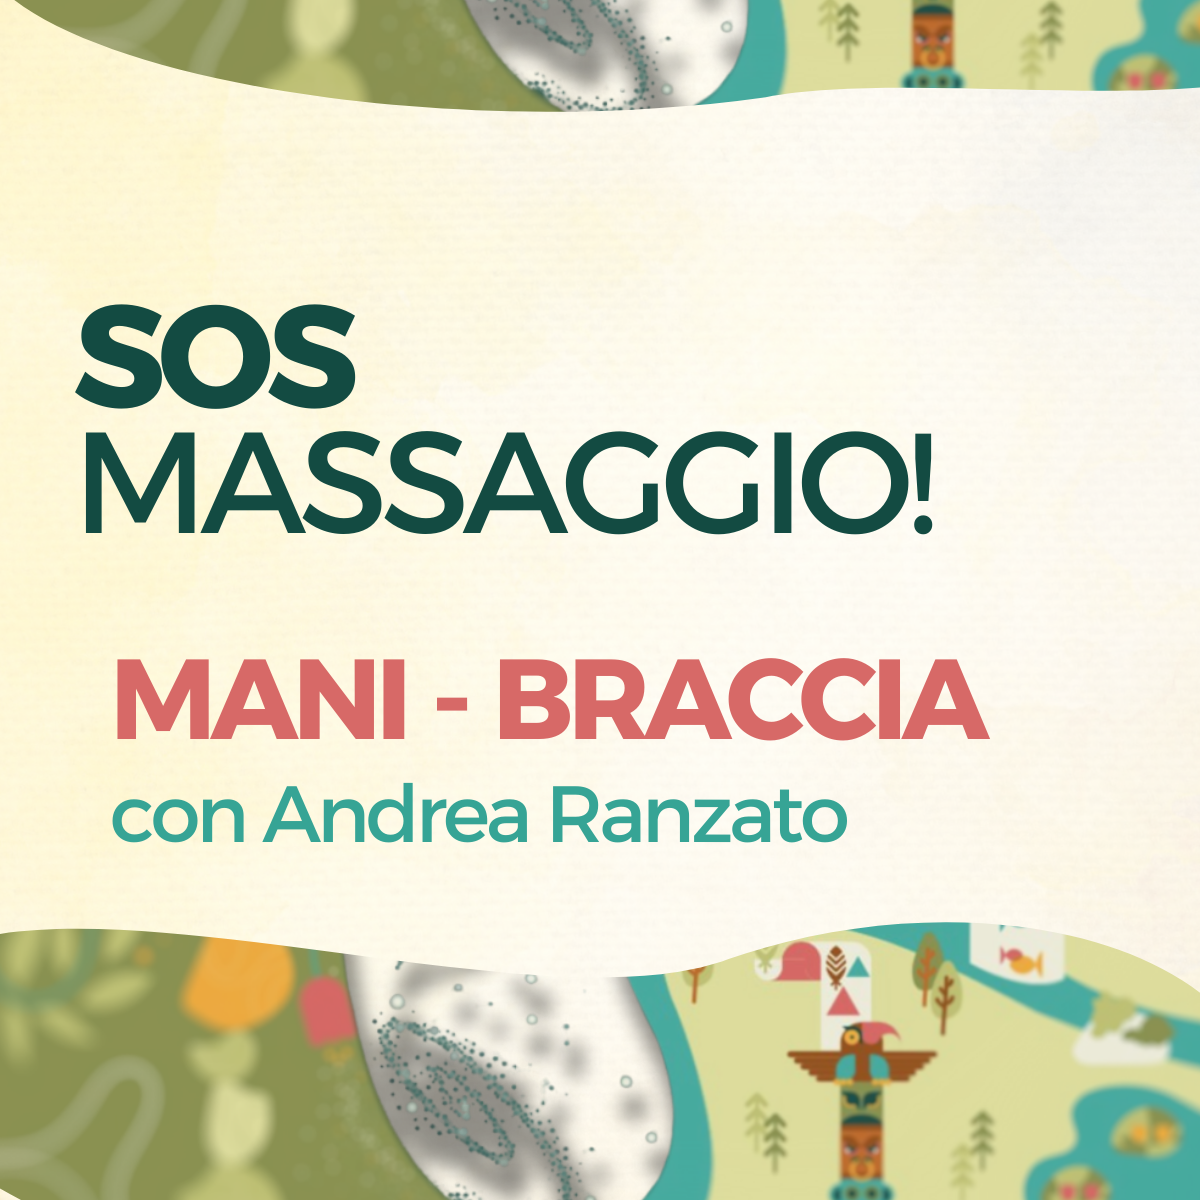 S.O.S. MASSAGGIO MANI-BRACCIA